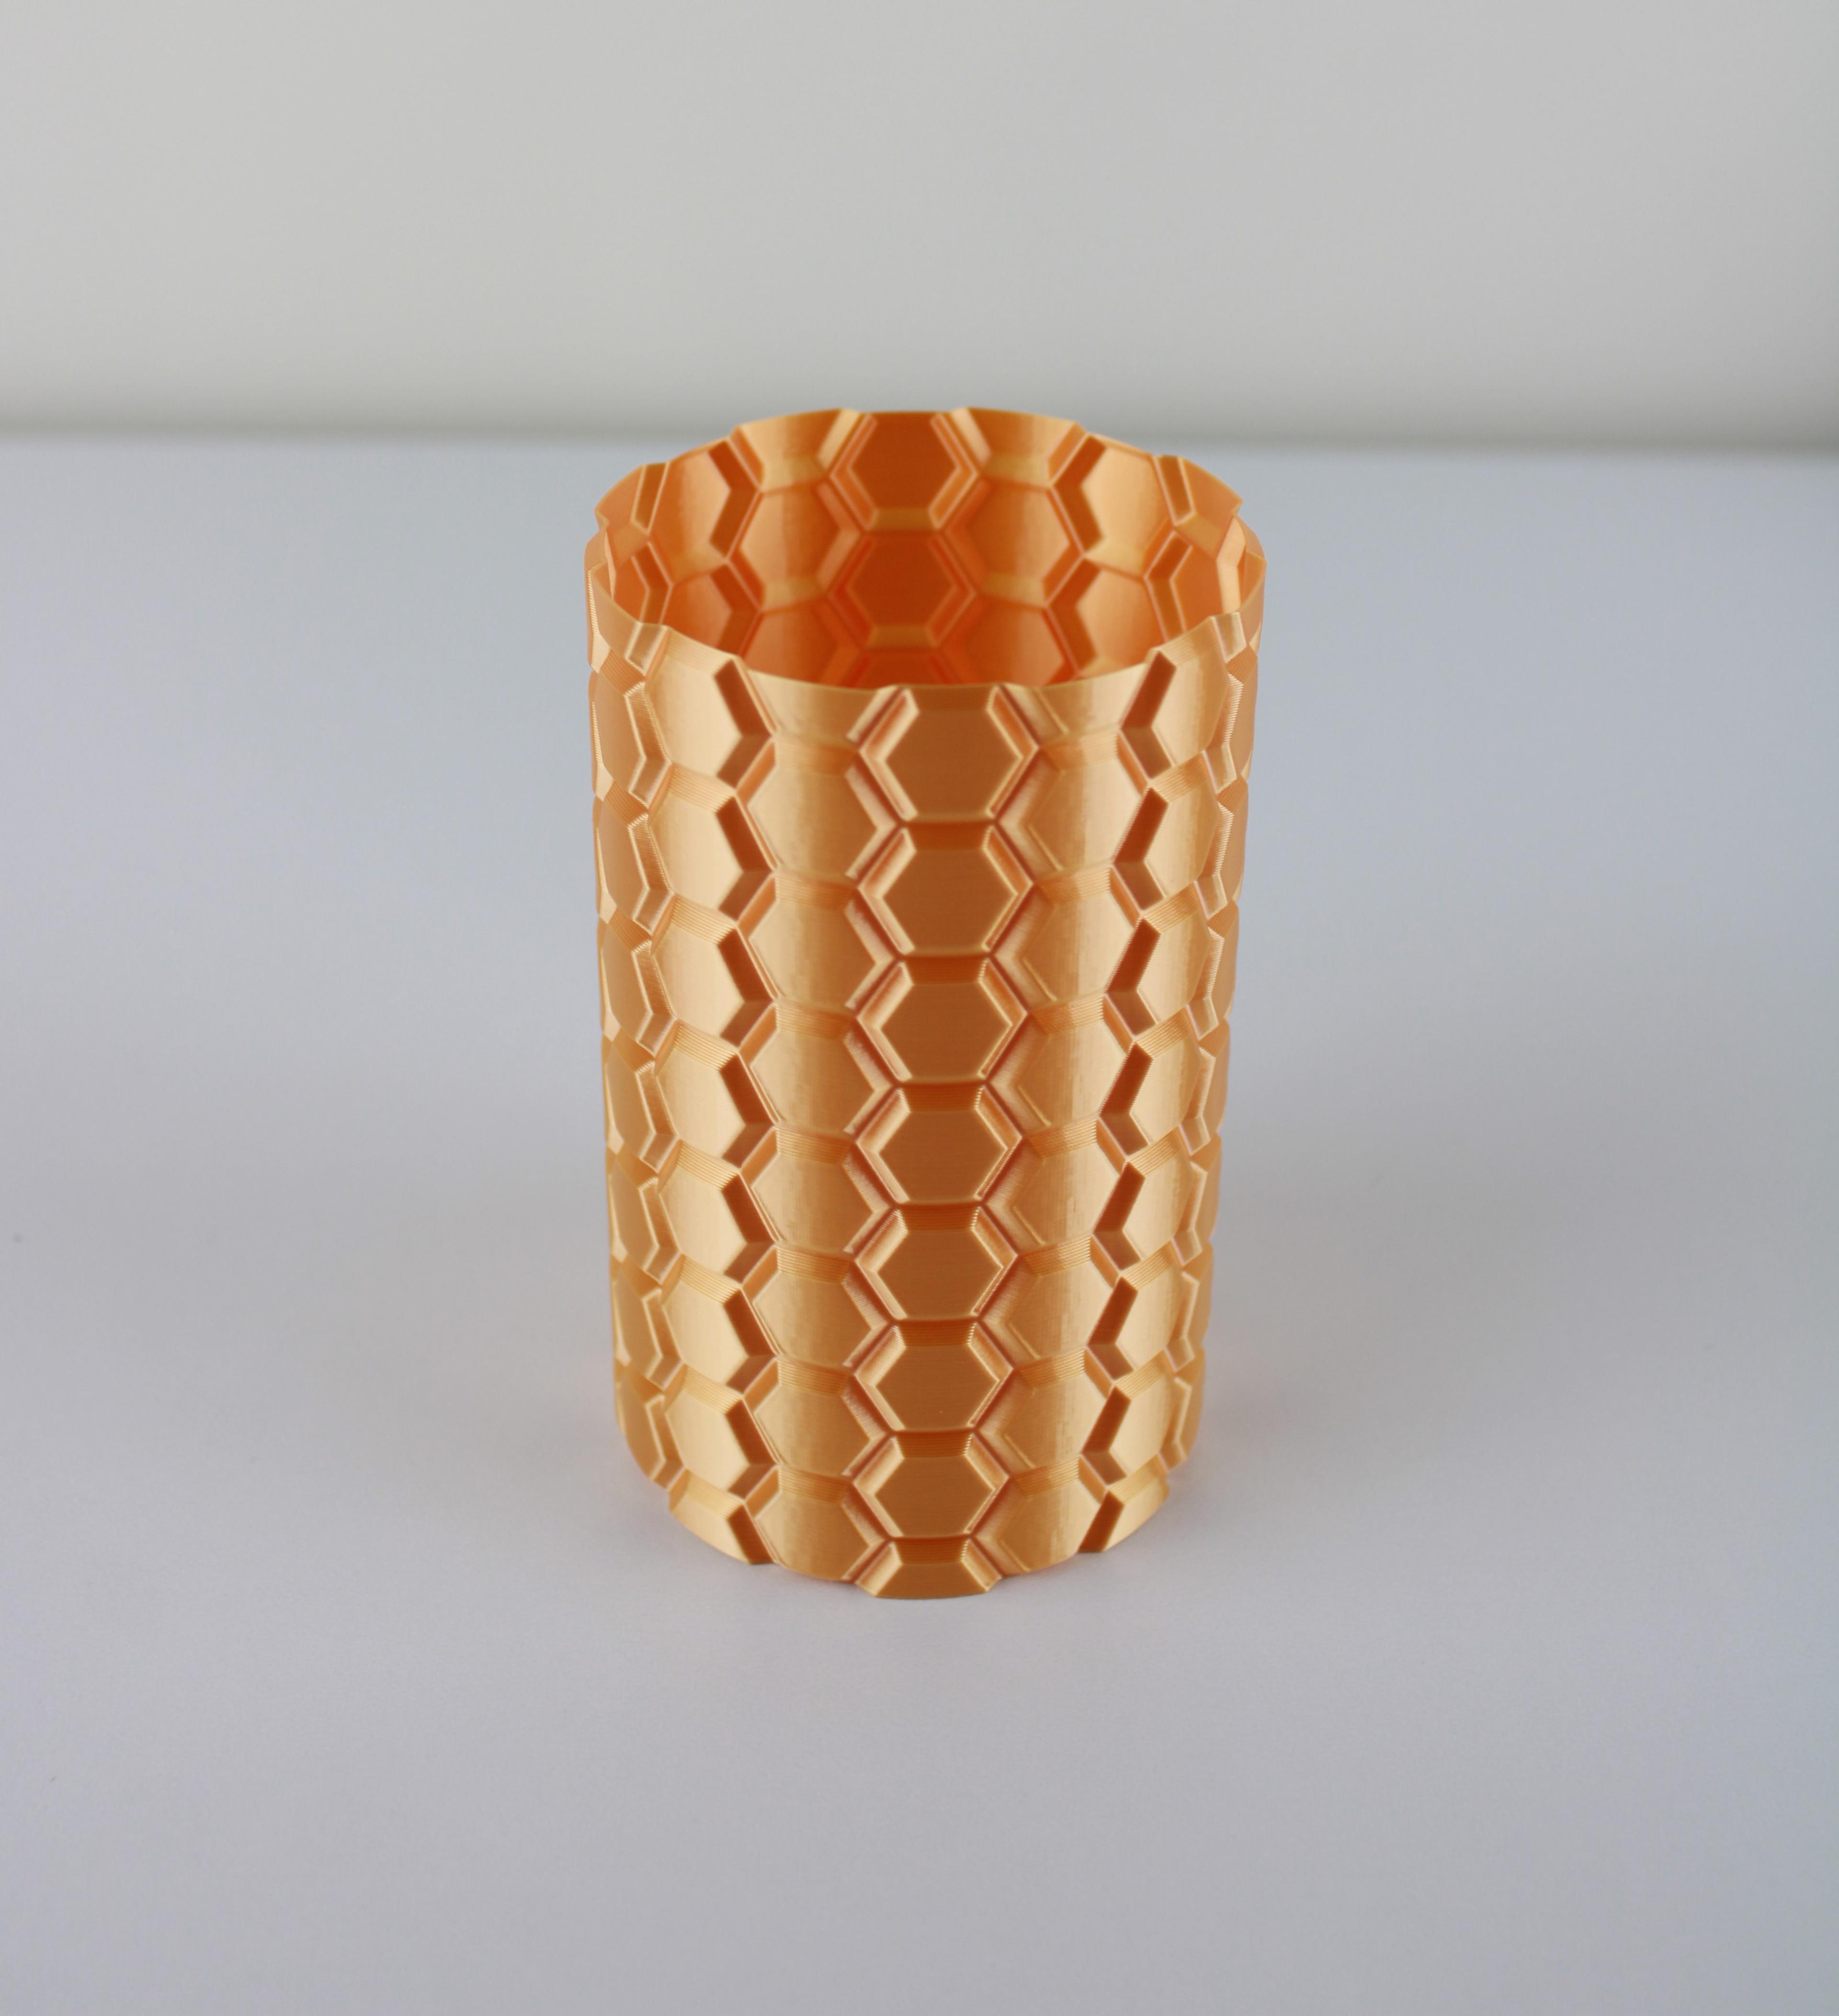 Honeycomb Vase (vase mode) 3d model